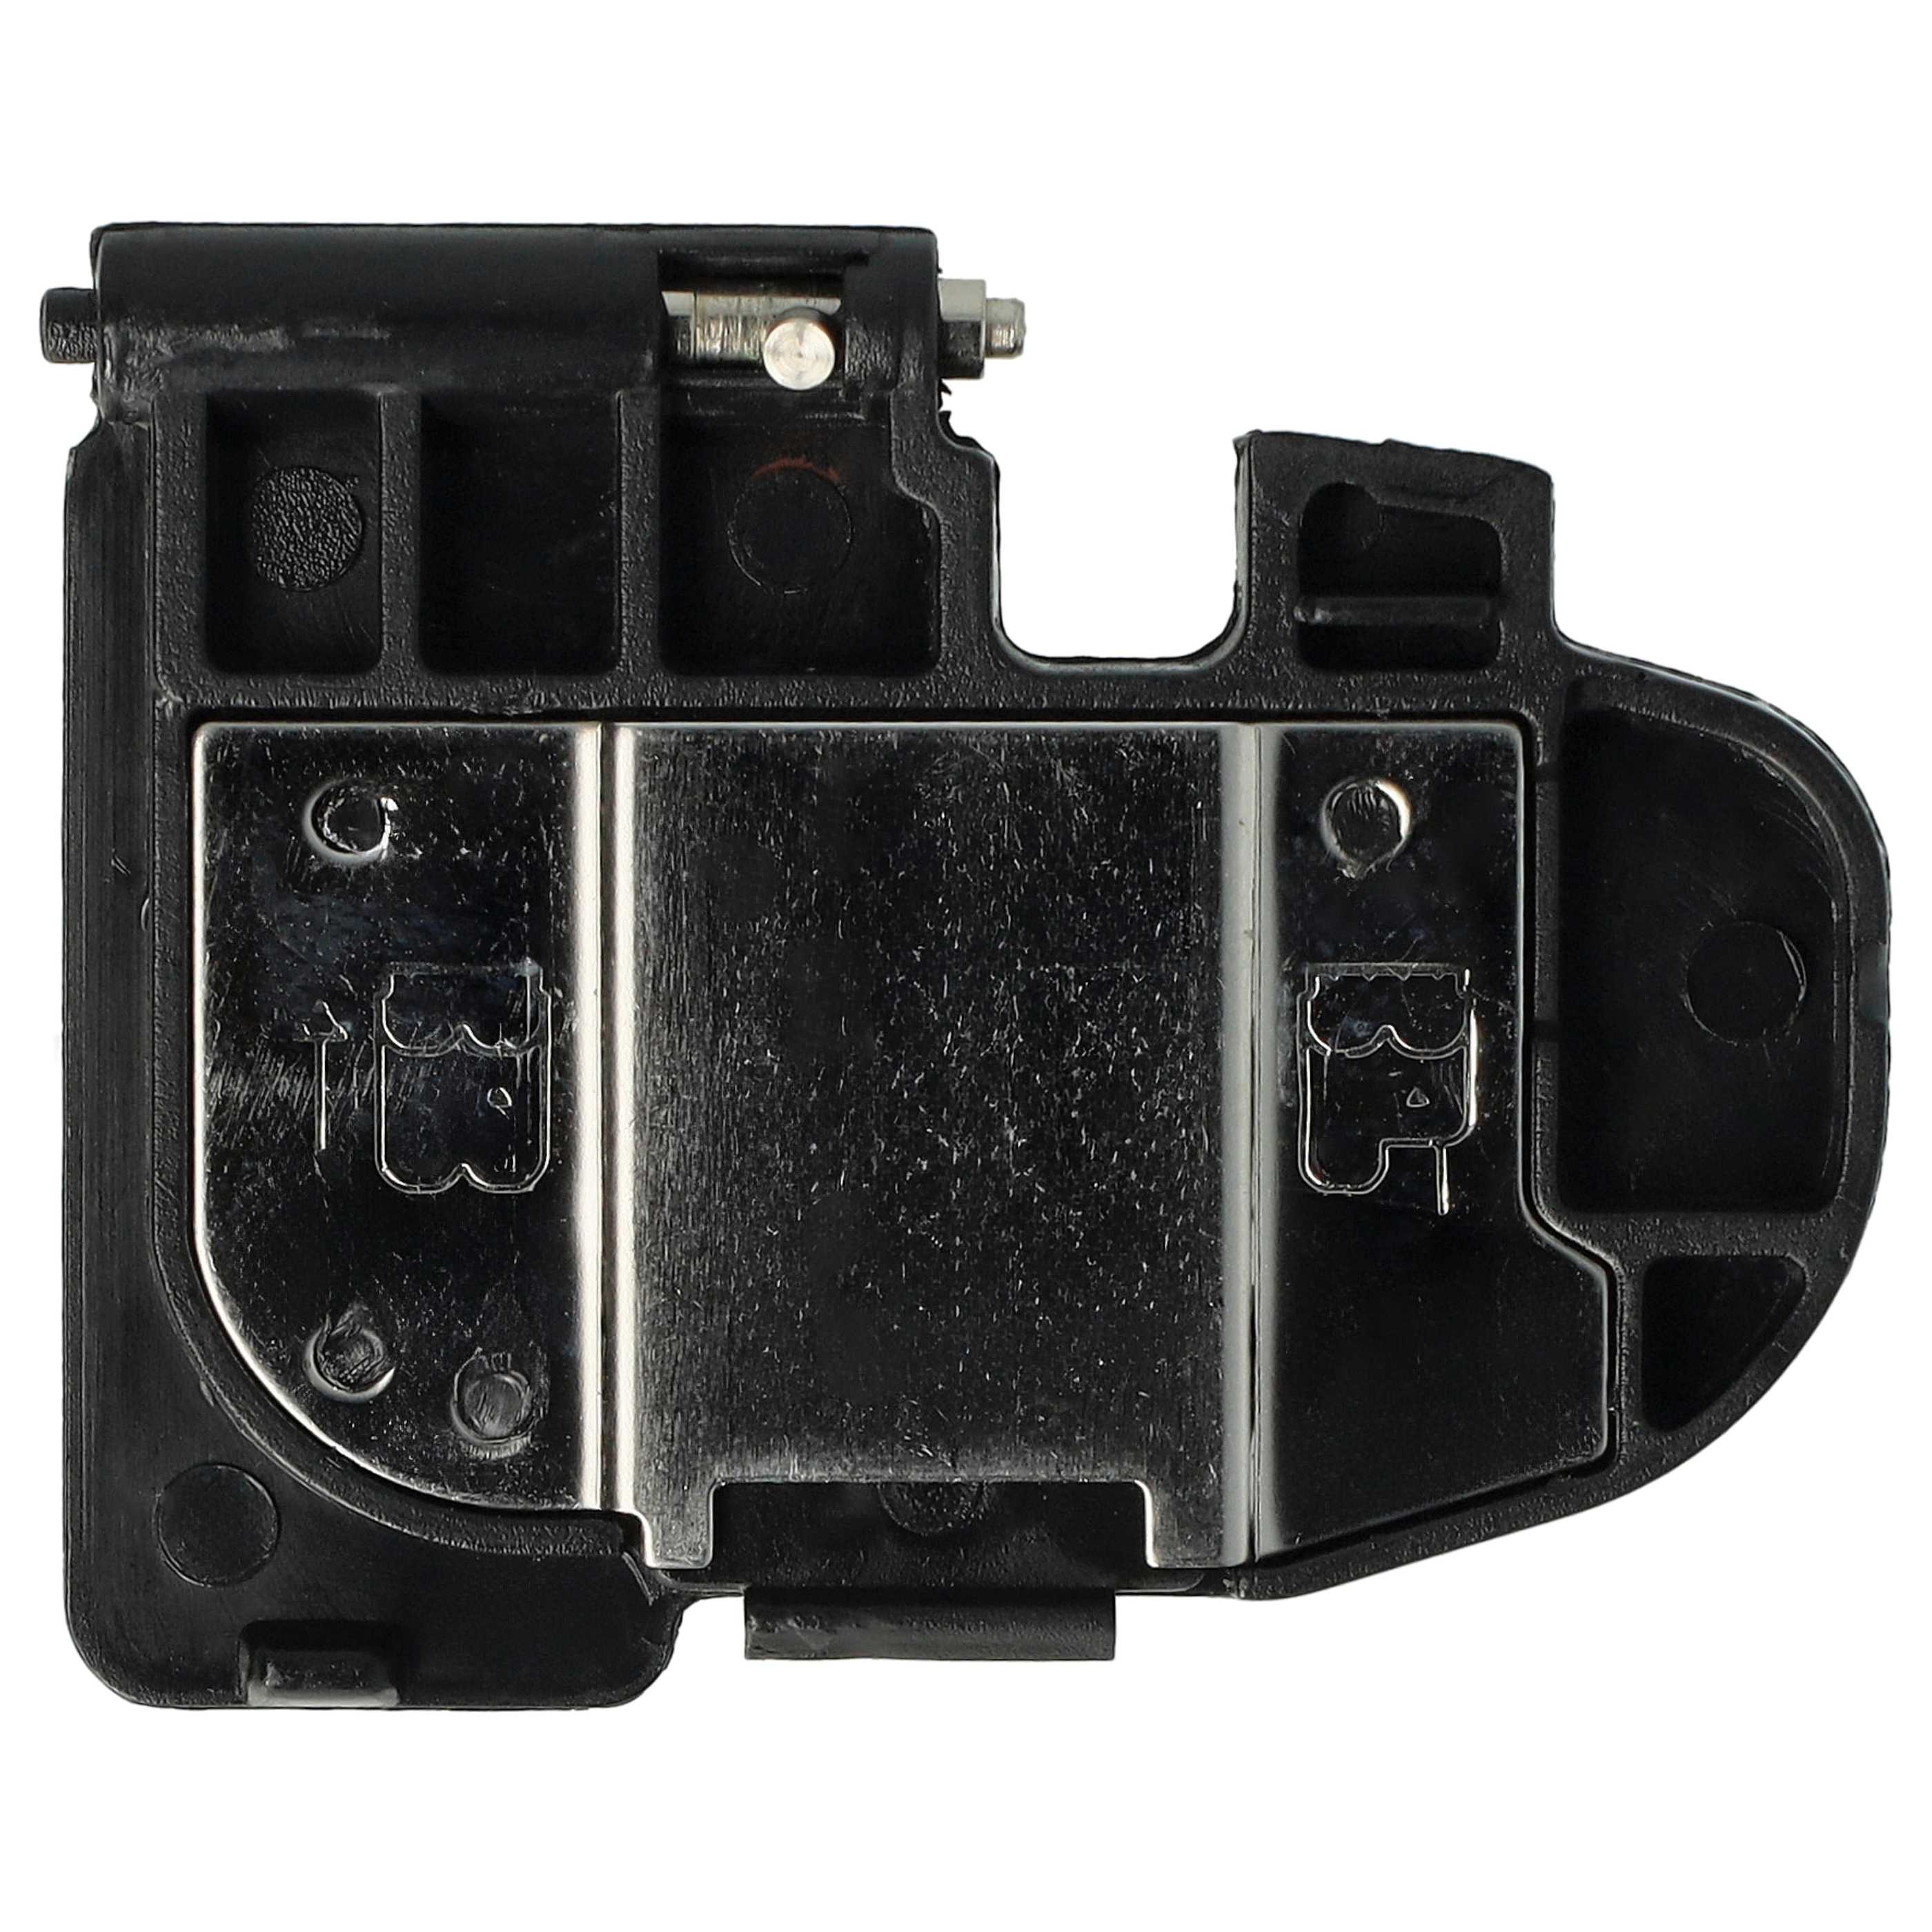 Tapa de batería para cámara, empuñadura de batería Canon EOS 5D